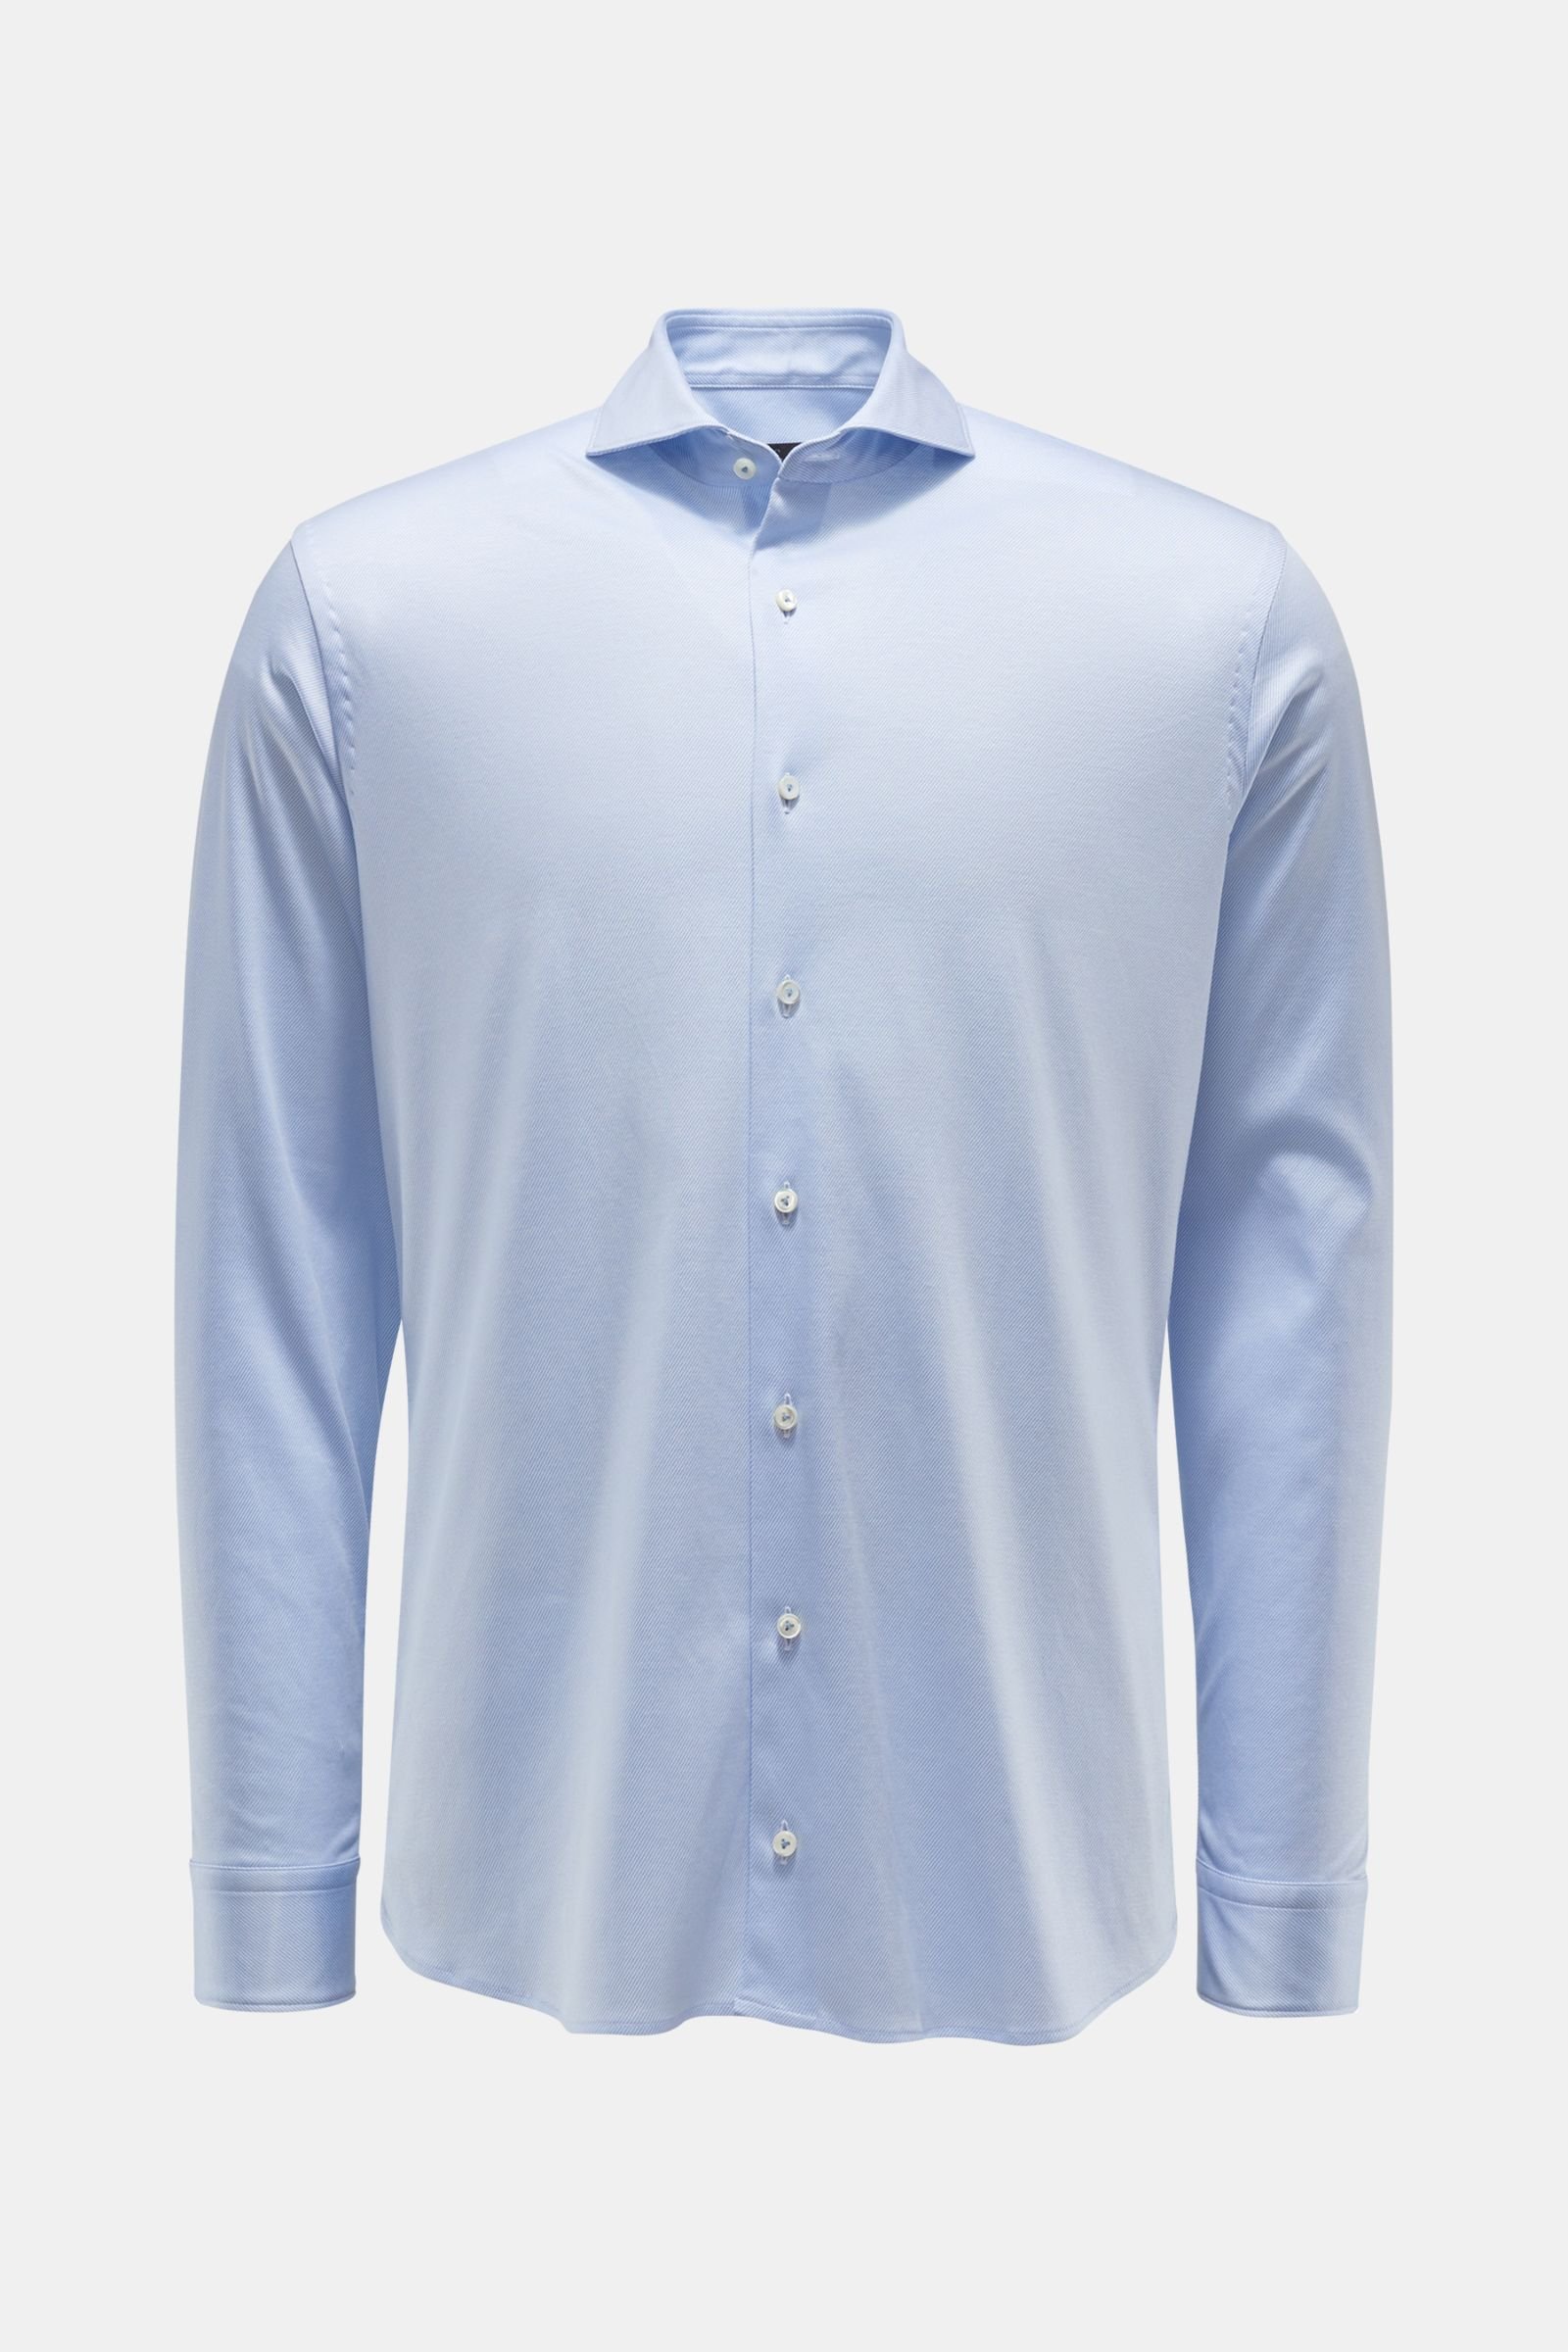 Jersey shirt shark collar 'M-Per-L' light blue/white striped